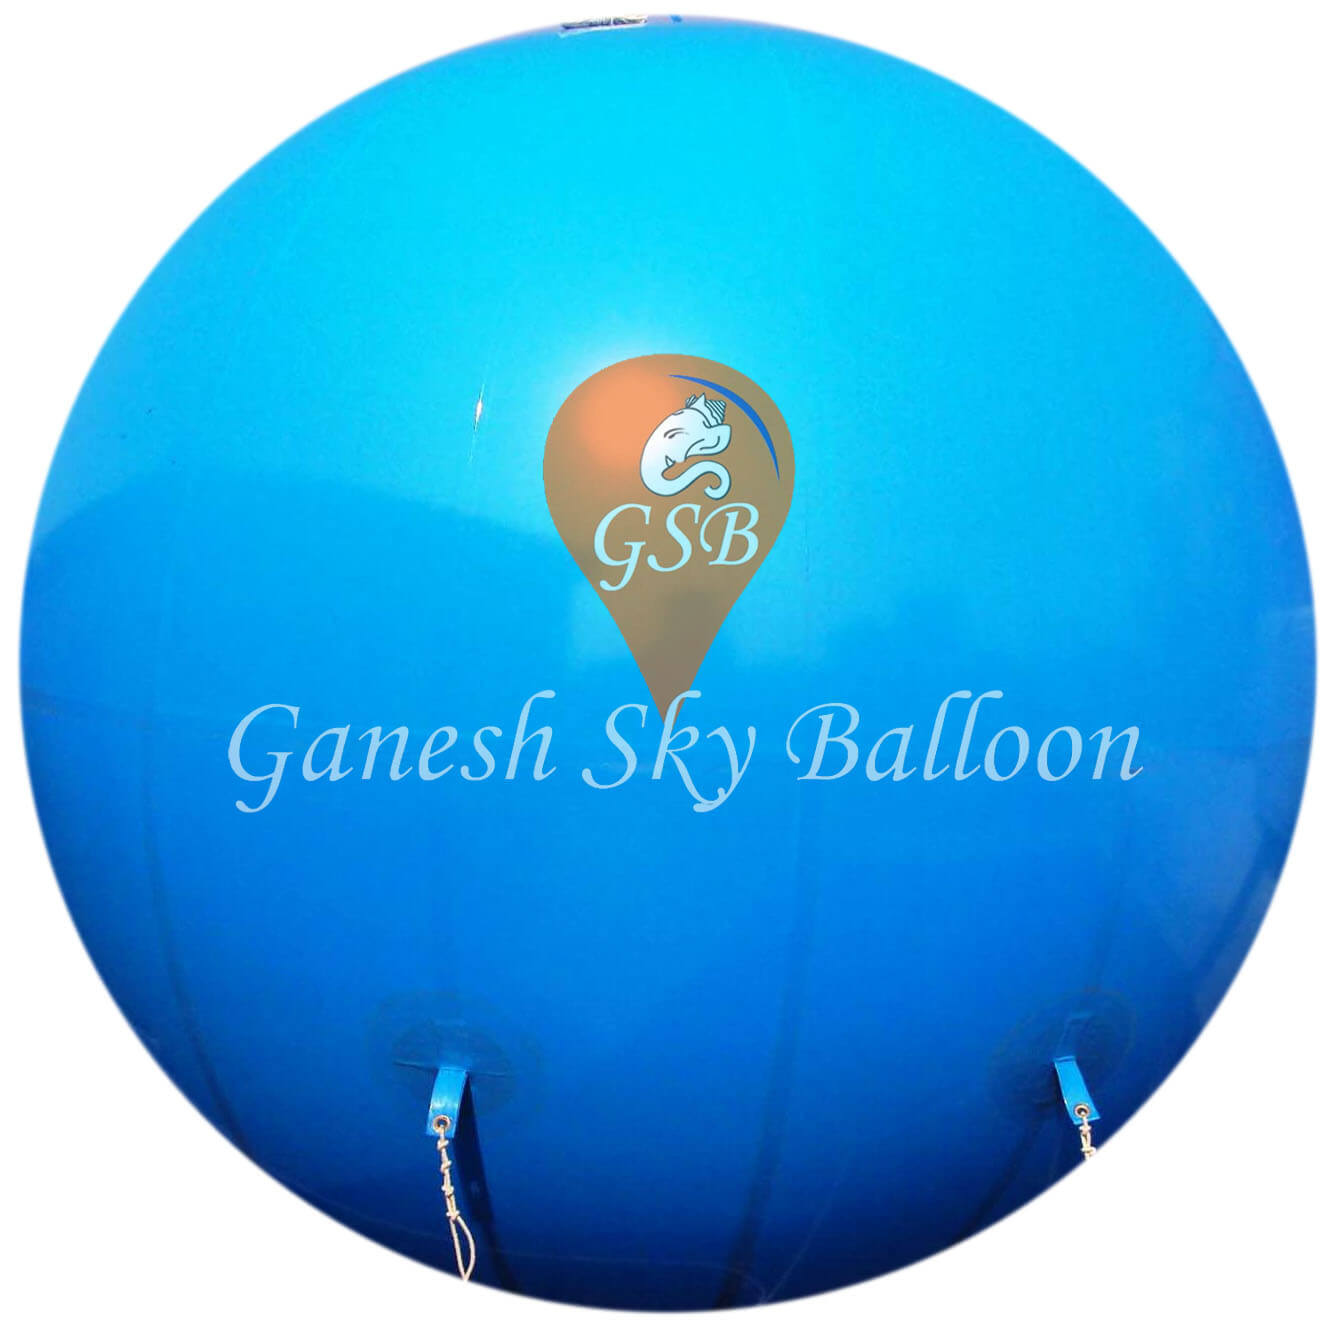 Advertising Sky Balloon supplier